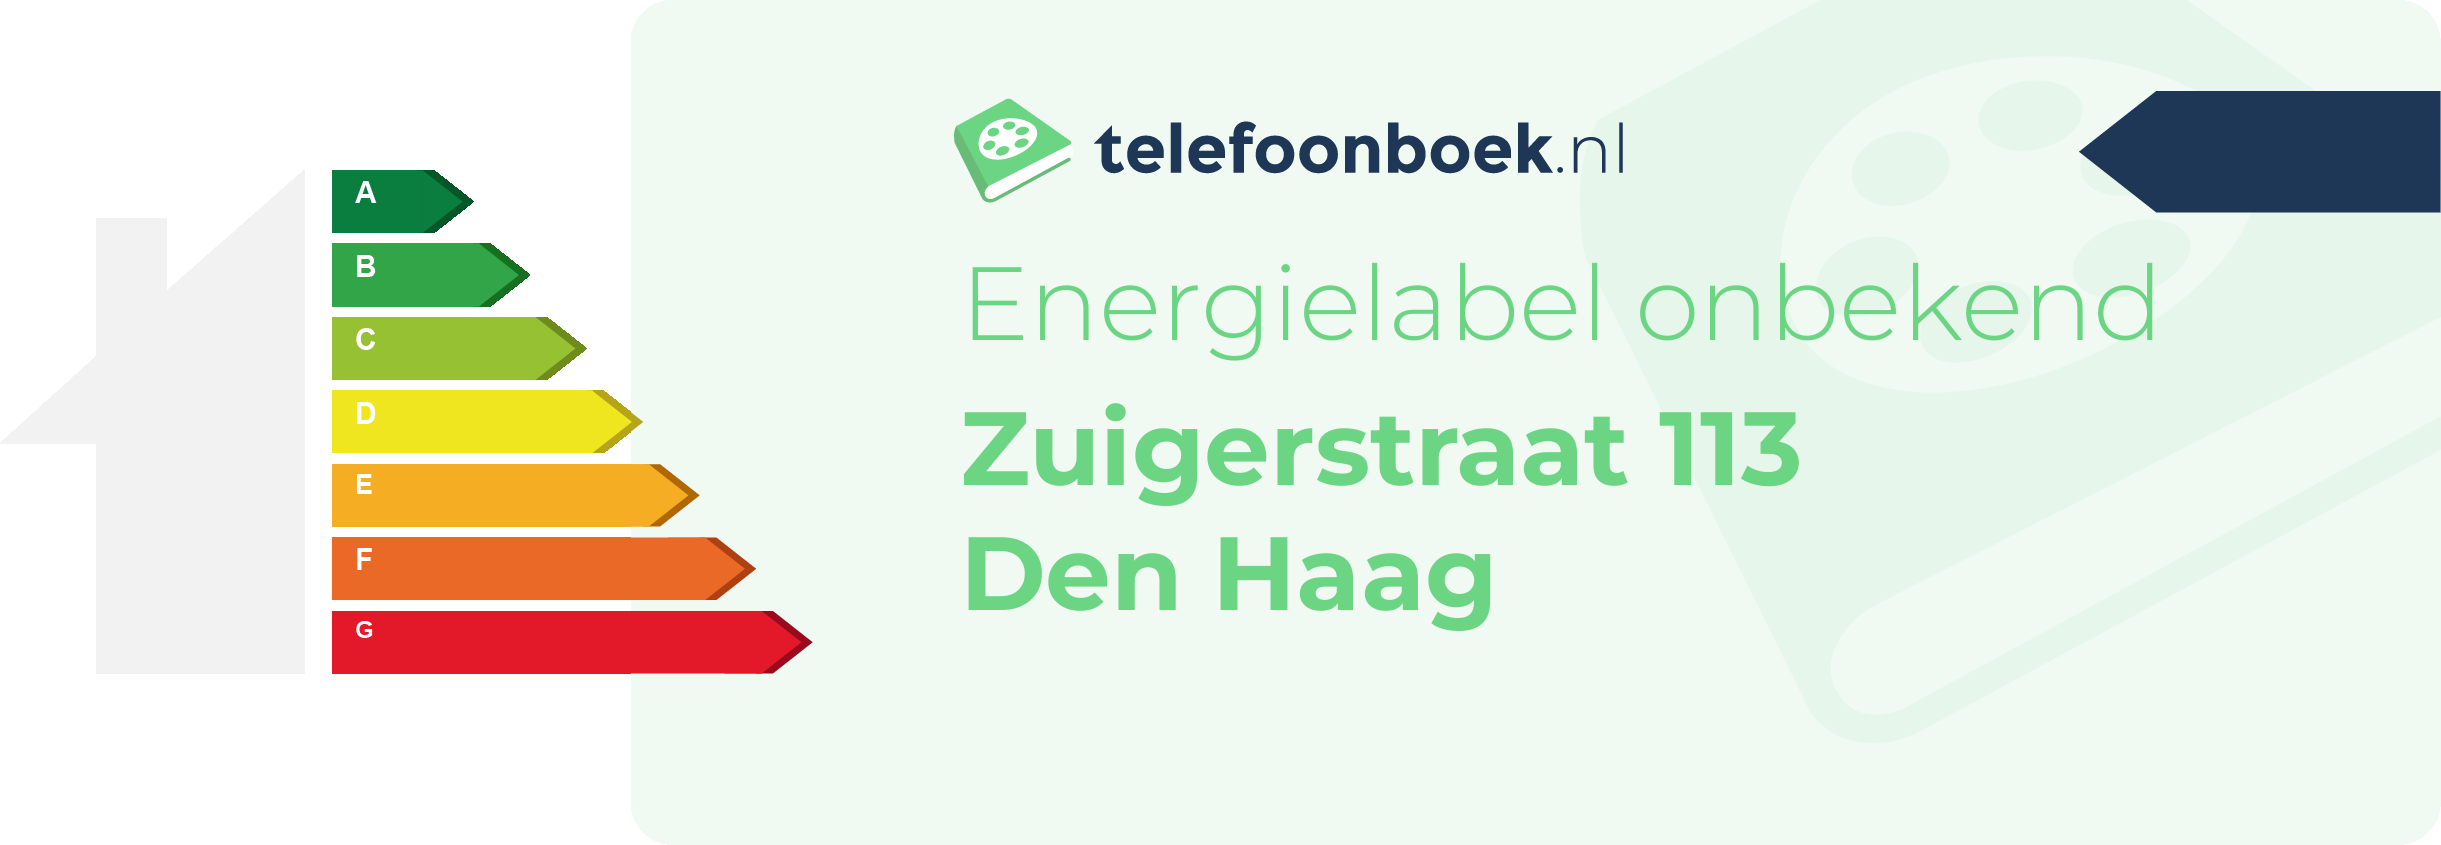 Energielabel Zuigerstraat 113 Den Haag